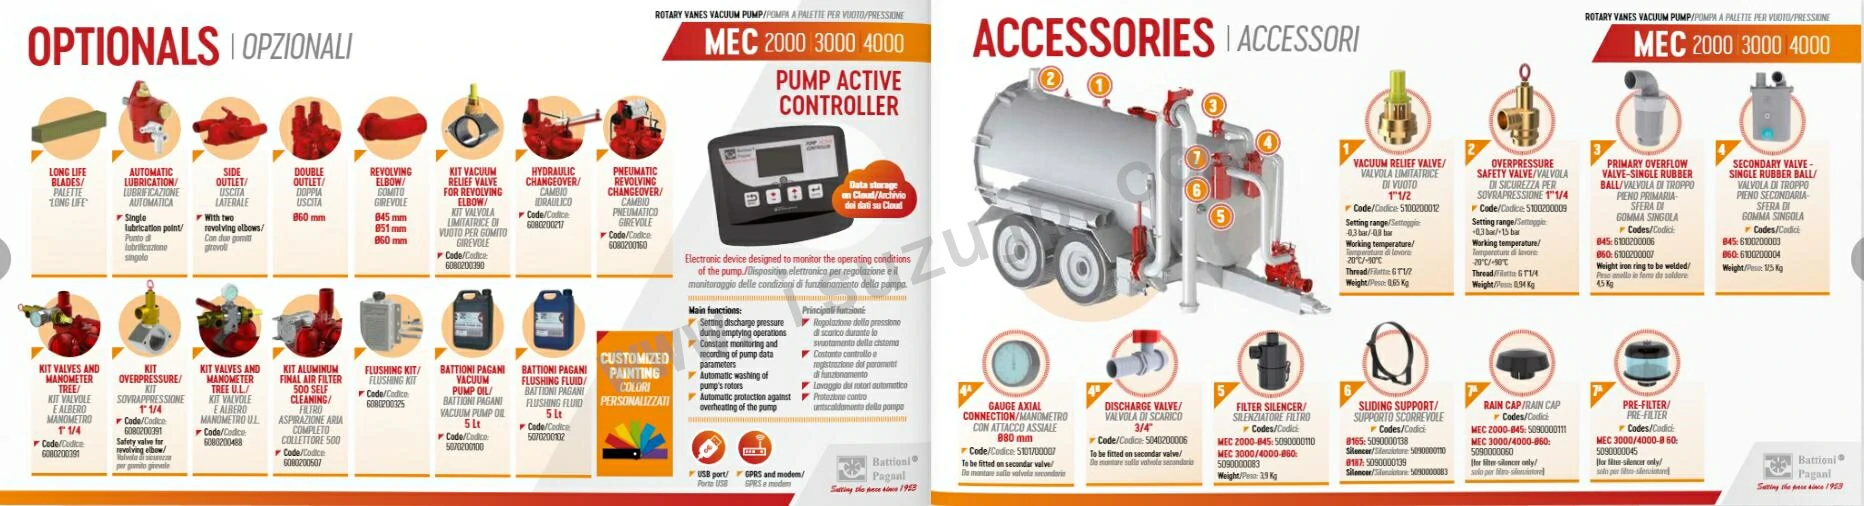 BATTIONI PAGANI MEC 1000-8000 Vacuum Pump Instructions 4